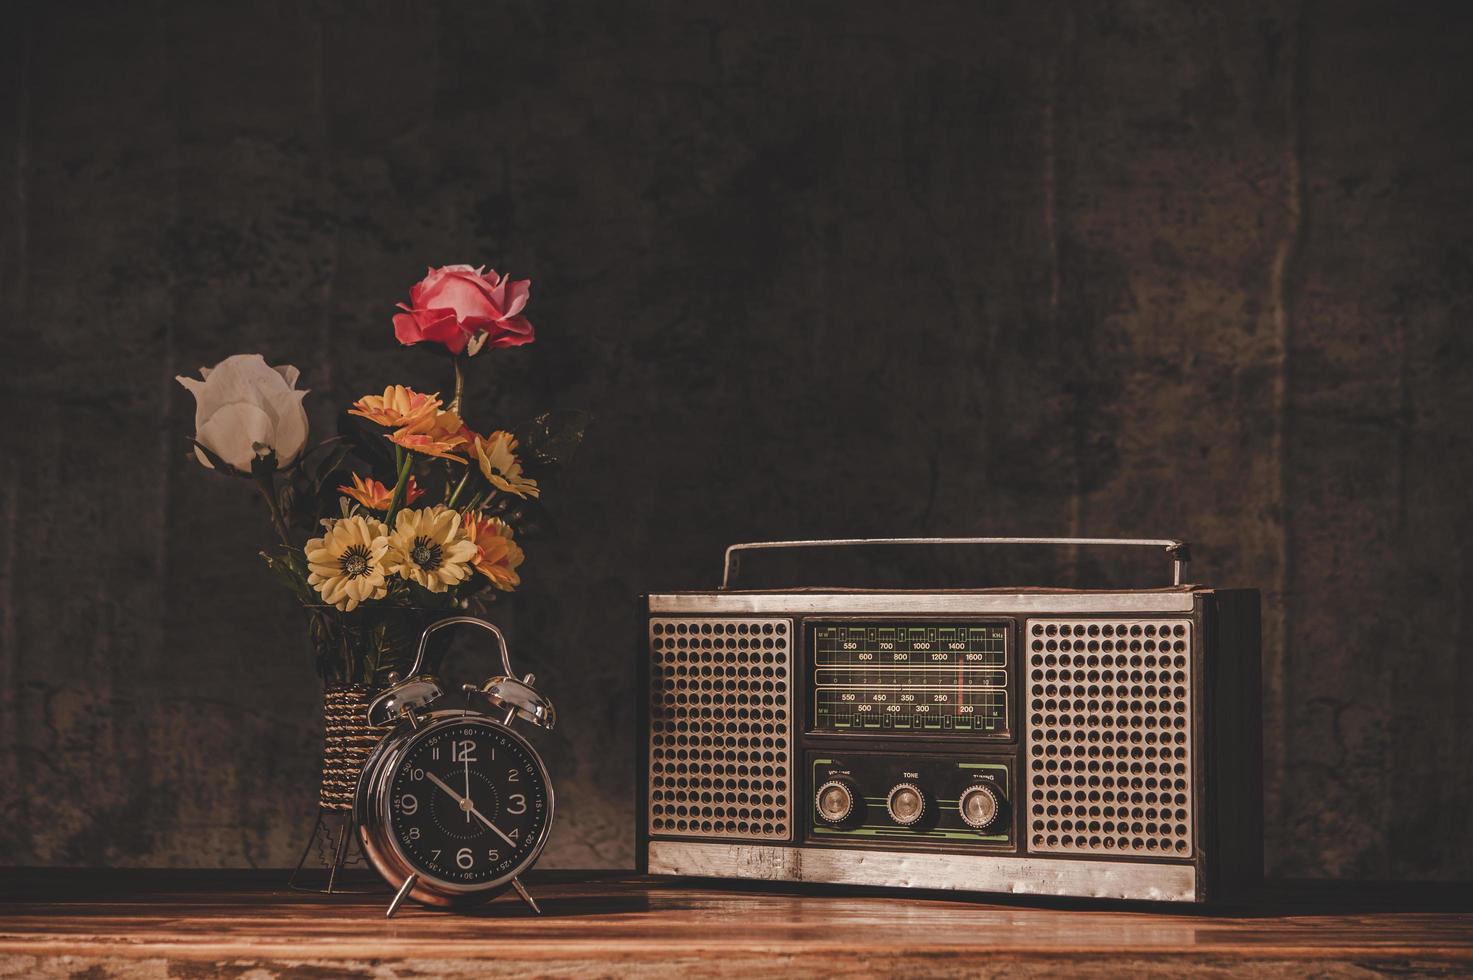 receptor de rádio retrô natureza morta com relógios e vasos de flores foto